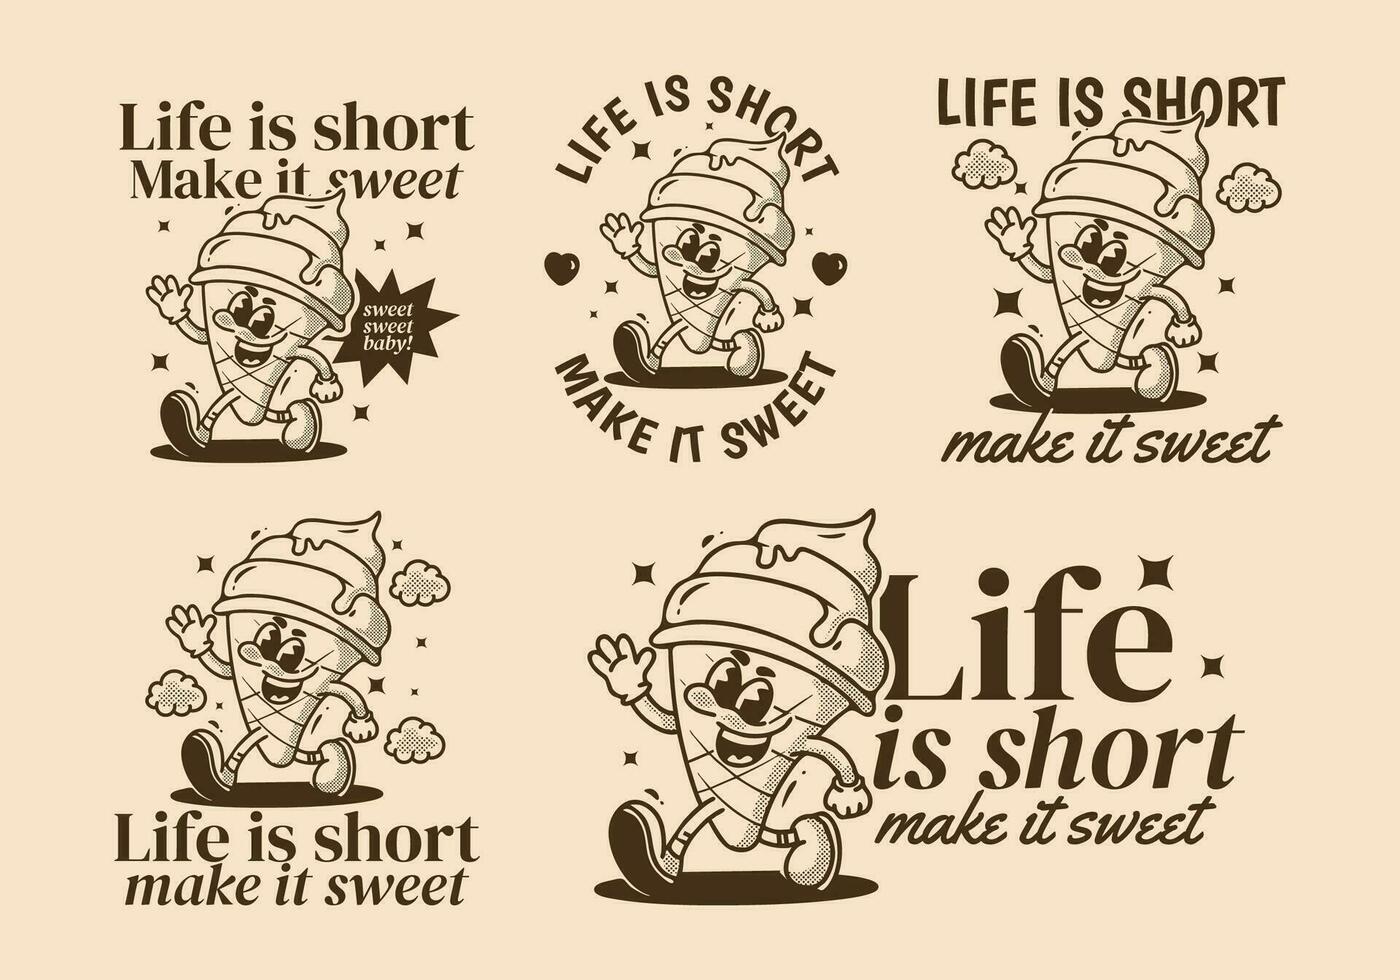 vida es corto, hacer eso dulce. mascota personaje ilustración de caminando hielo crema vector